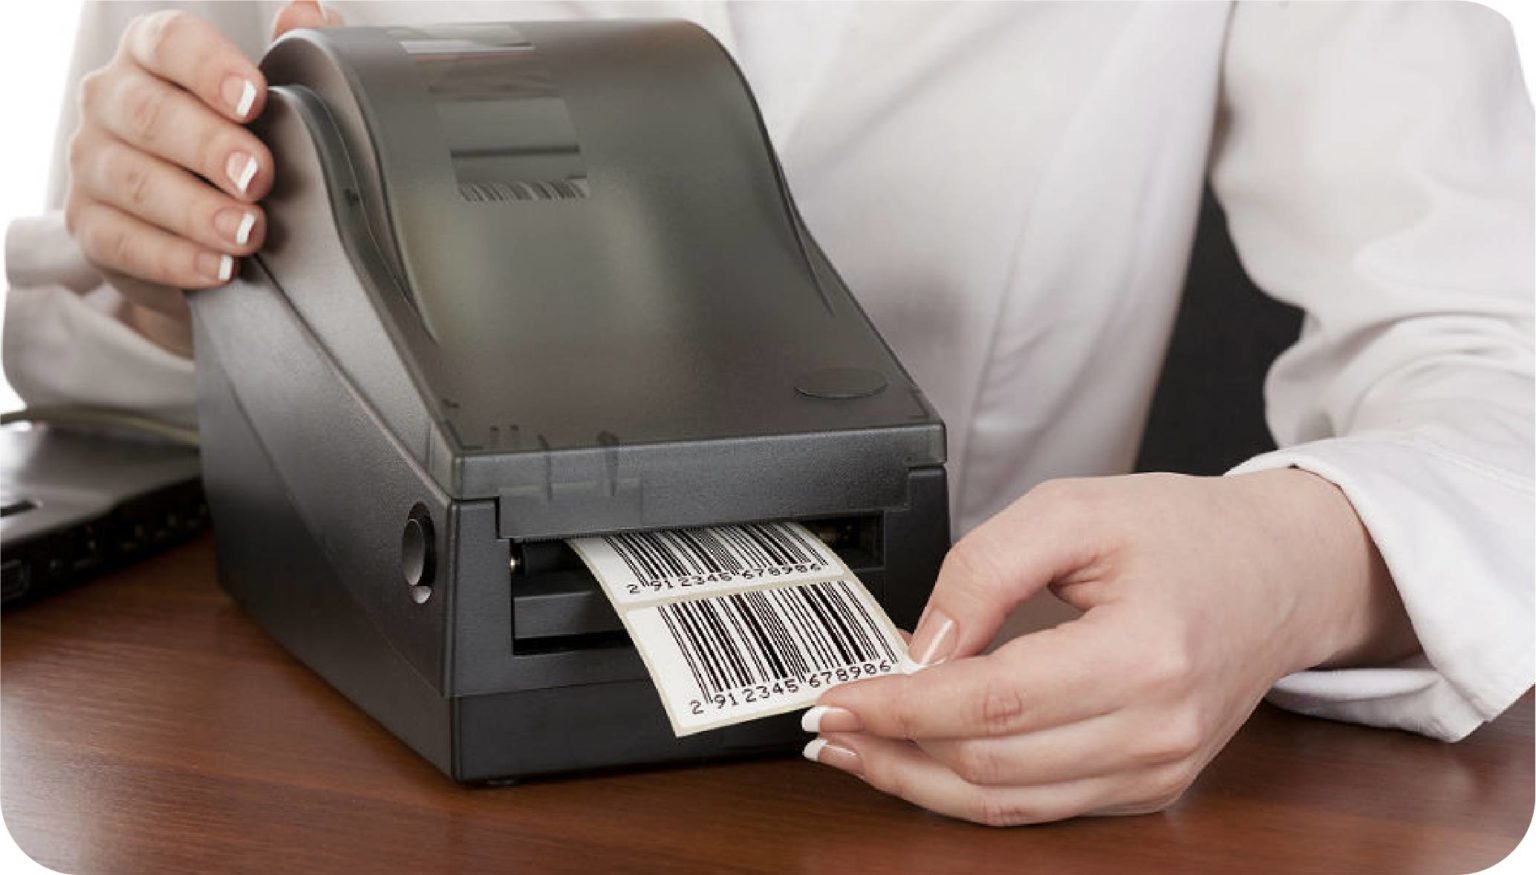 El software de gestión permite imprimir tus propias etiquetas de códigos de barras